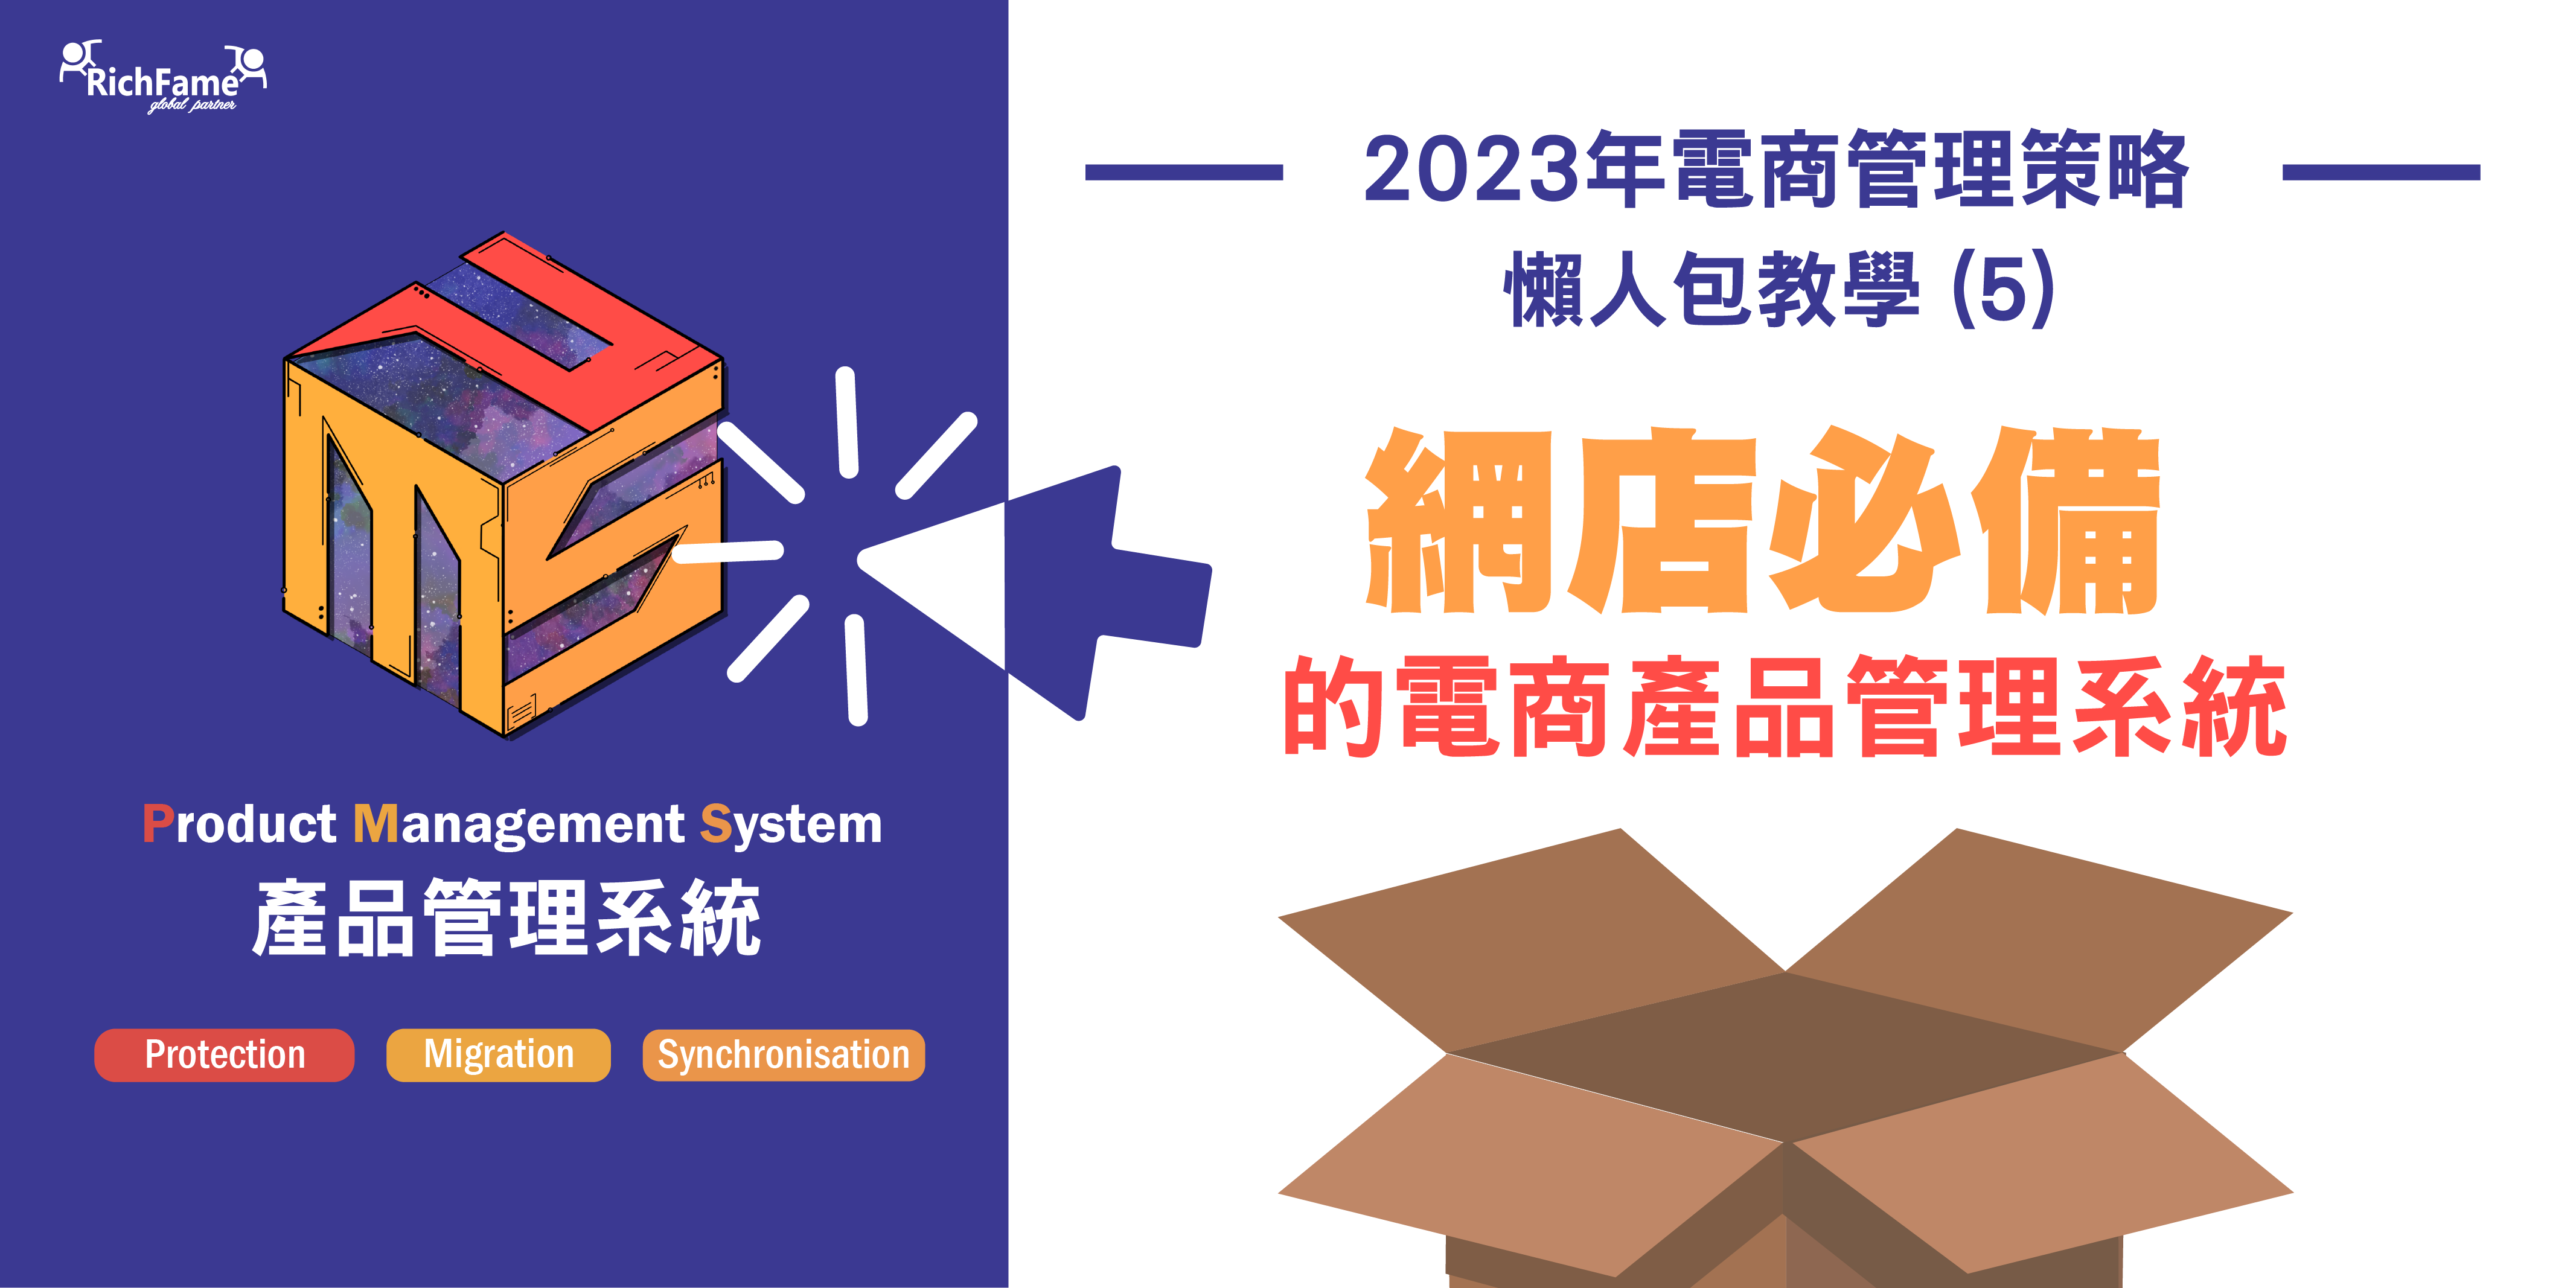 【2023年電商管理策略】 懶人包教學 (5) — 網店必備的電商產品管理系統 I 限時免費登記